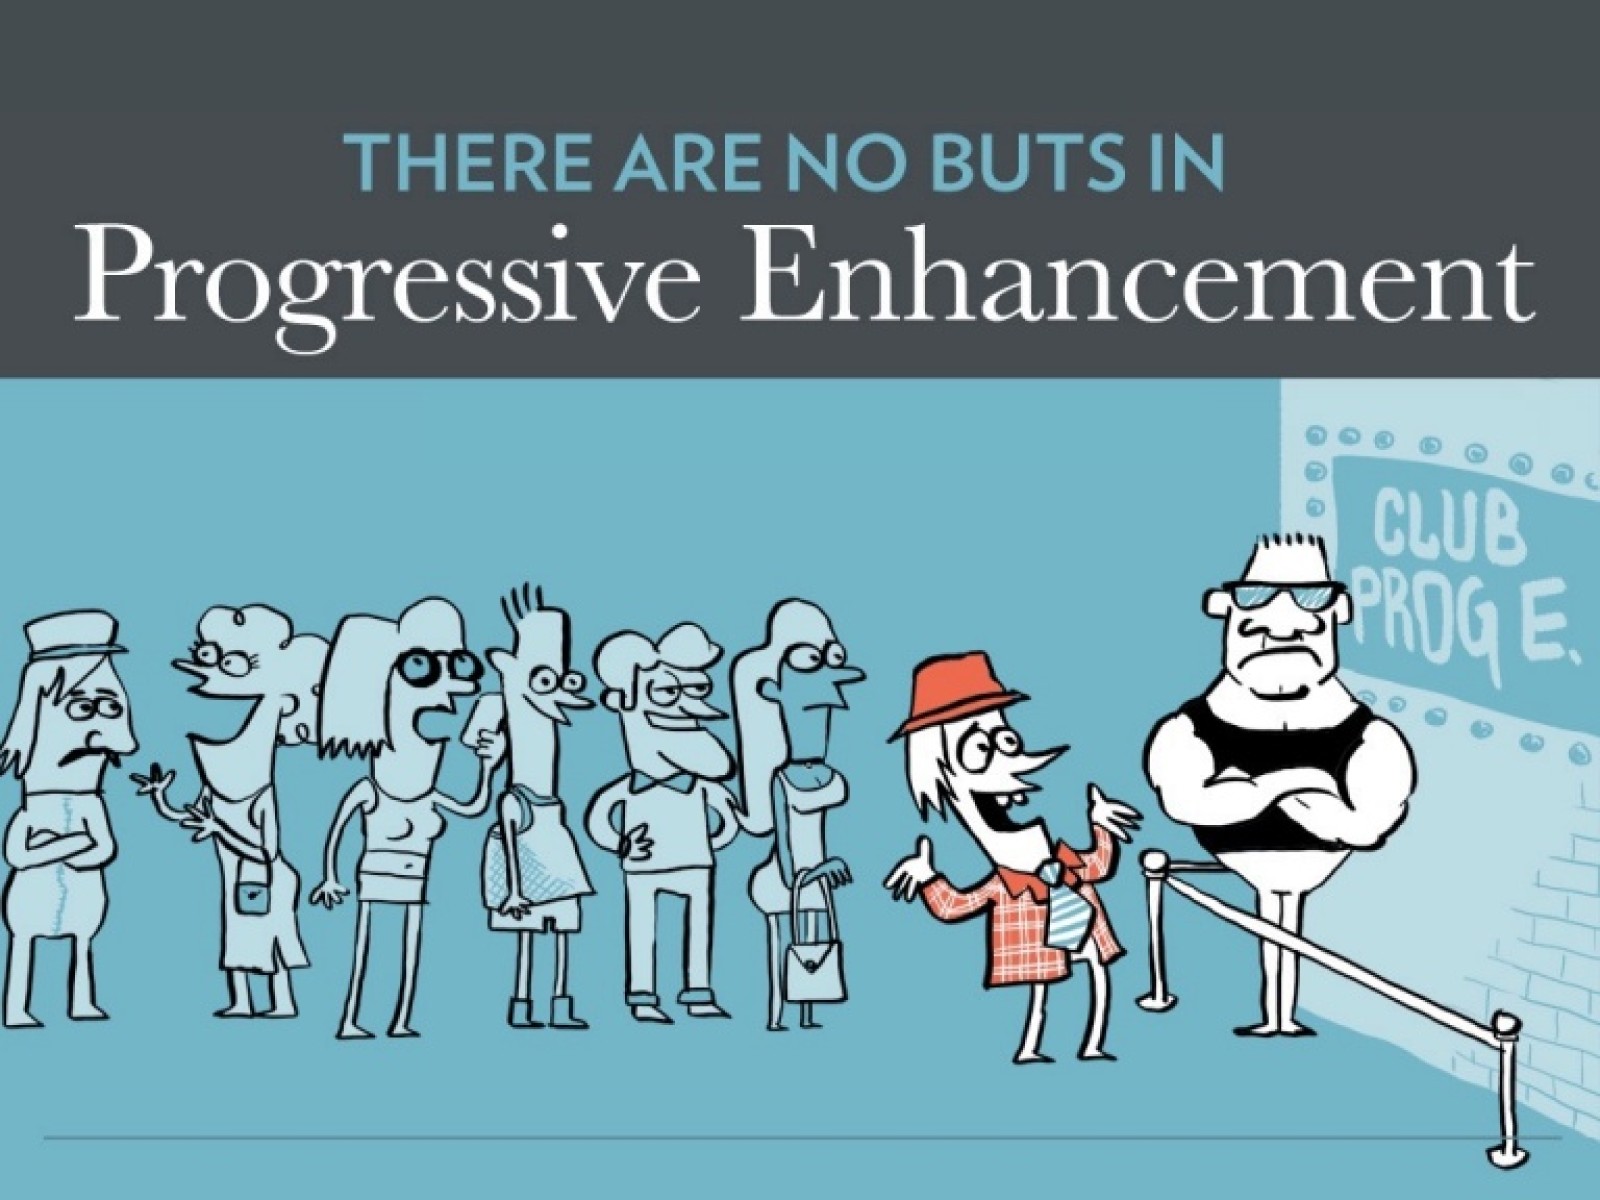 There Are No “Buts” in Progressive Enhancement